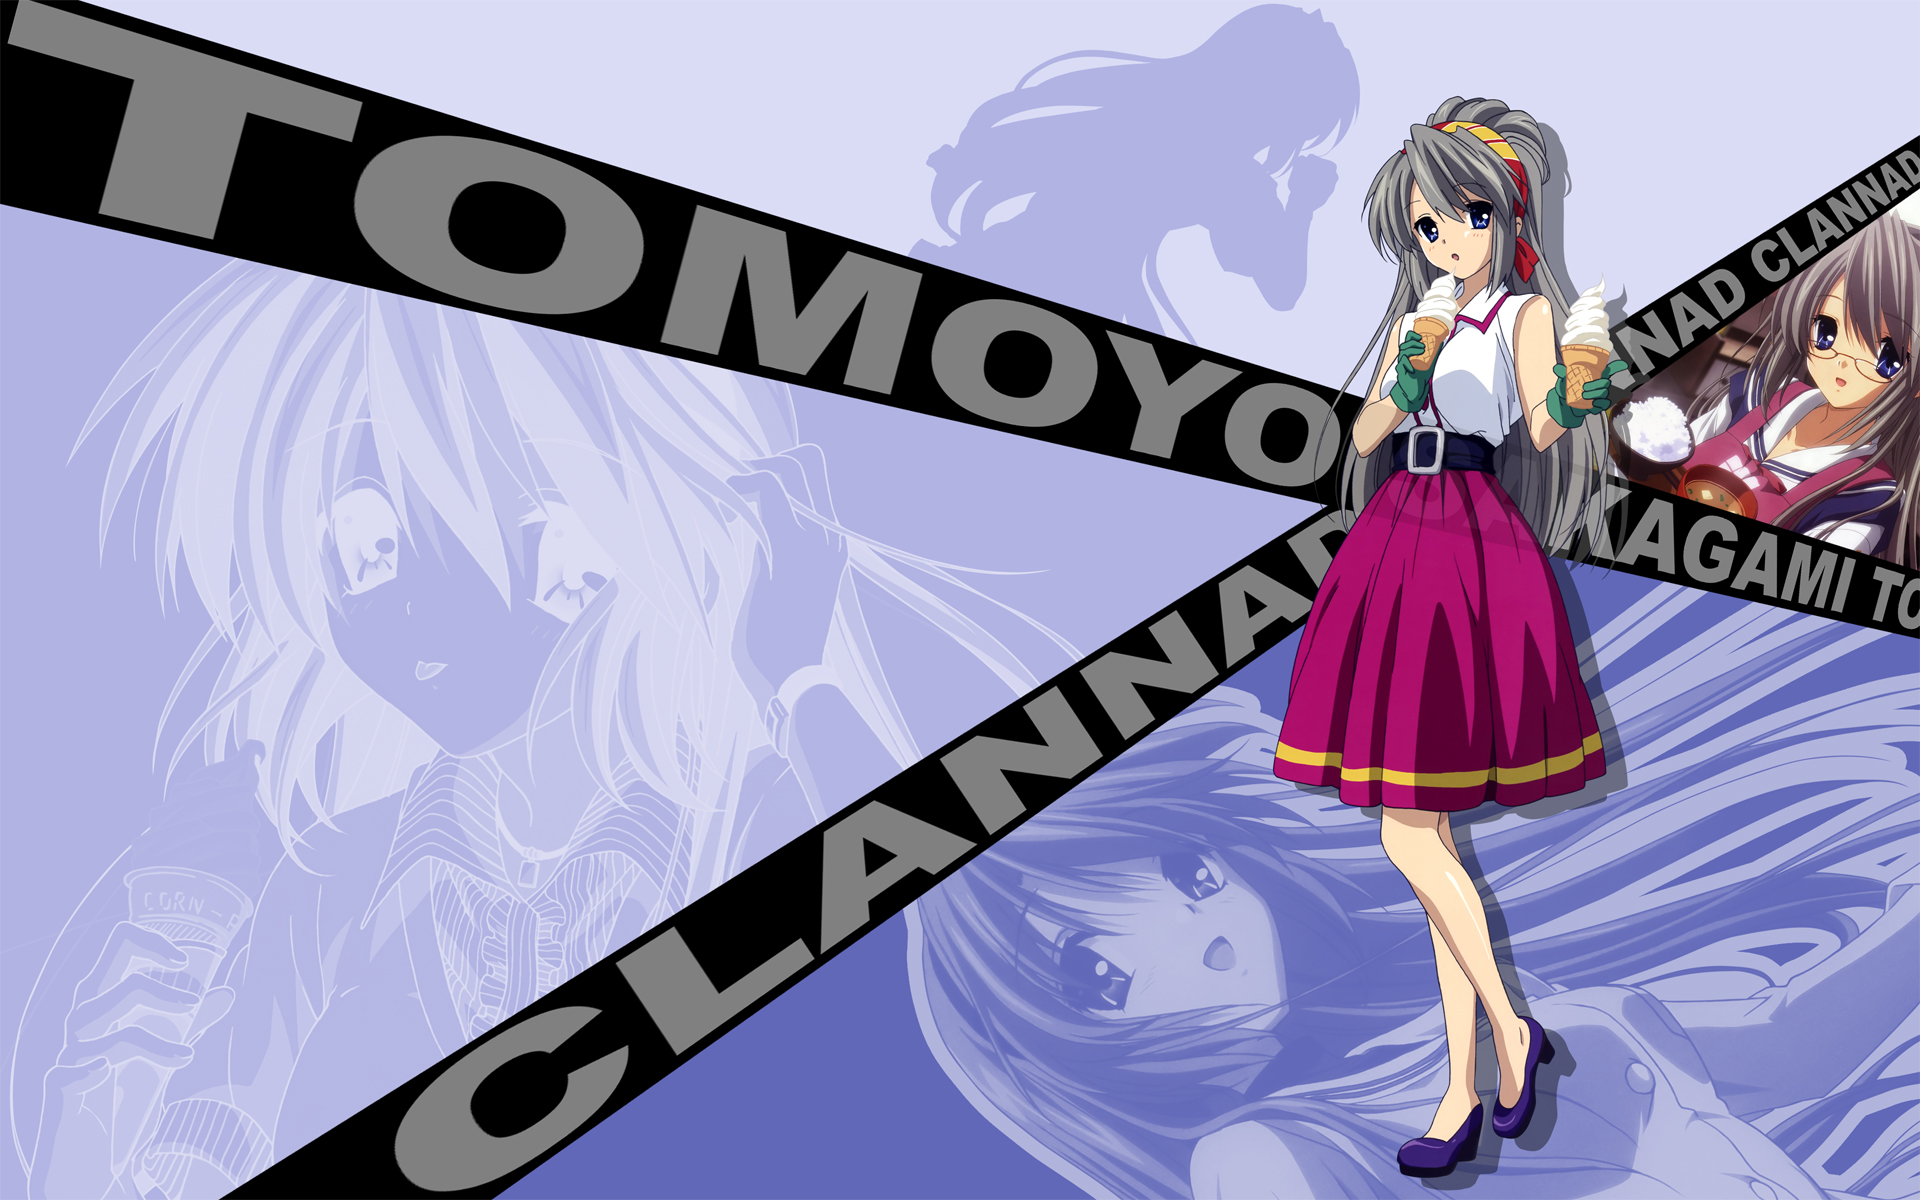 Téléchargez des papiers peints mobile Animé, Clannad, Tomoyo Sakagami gratuitement.